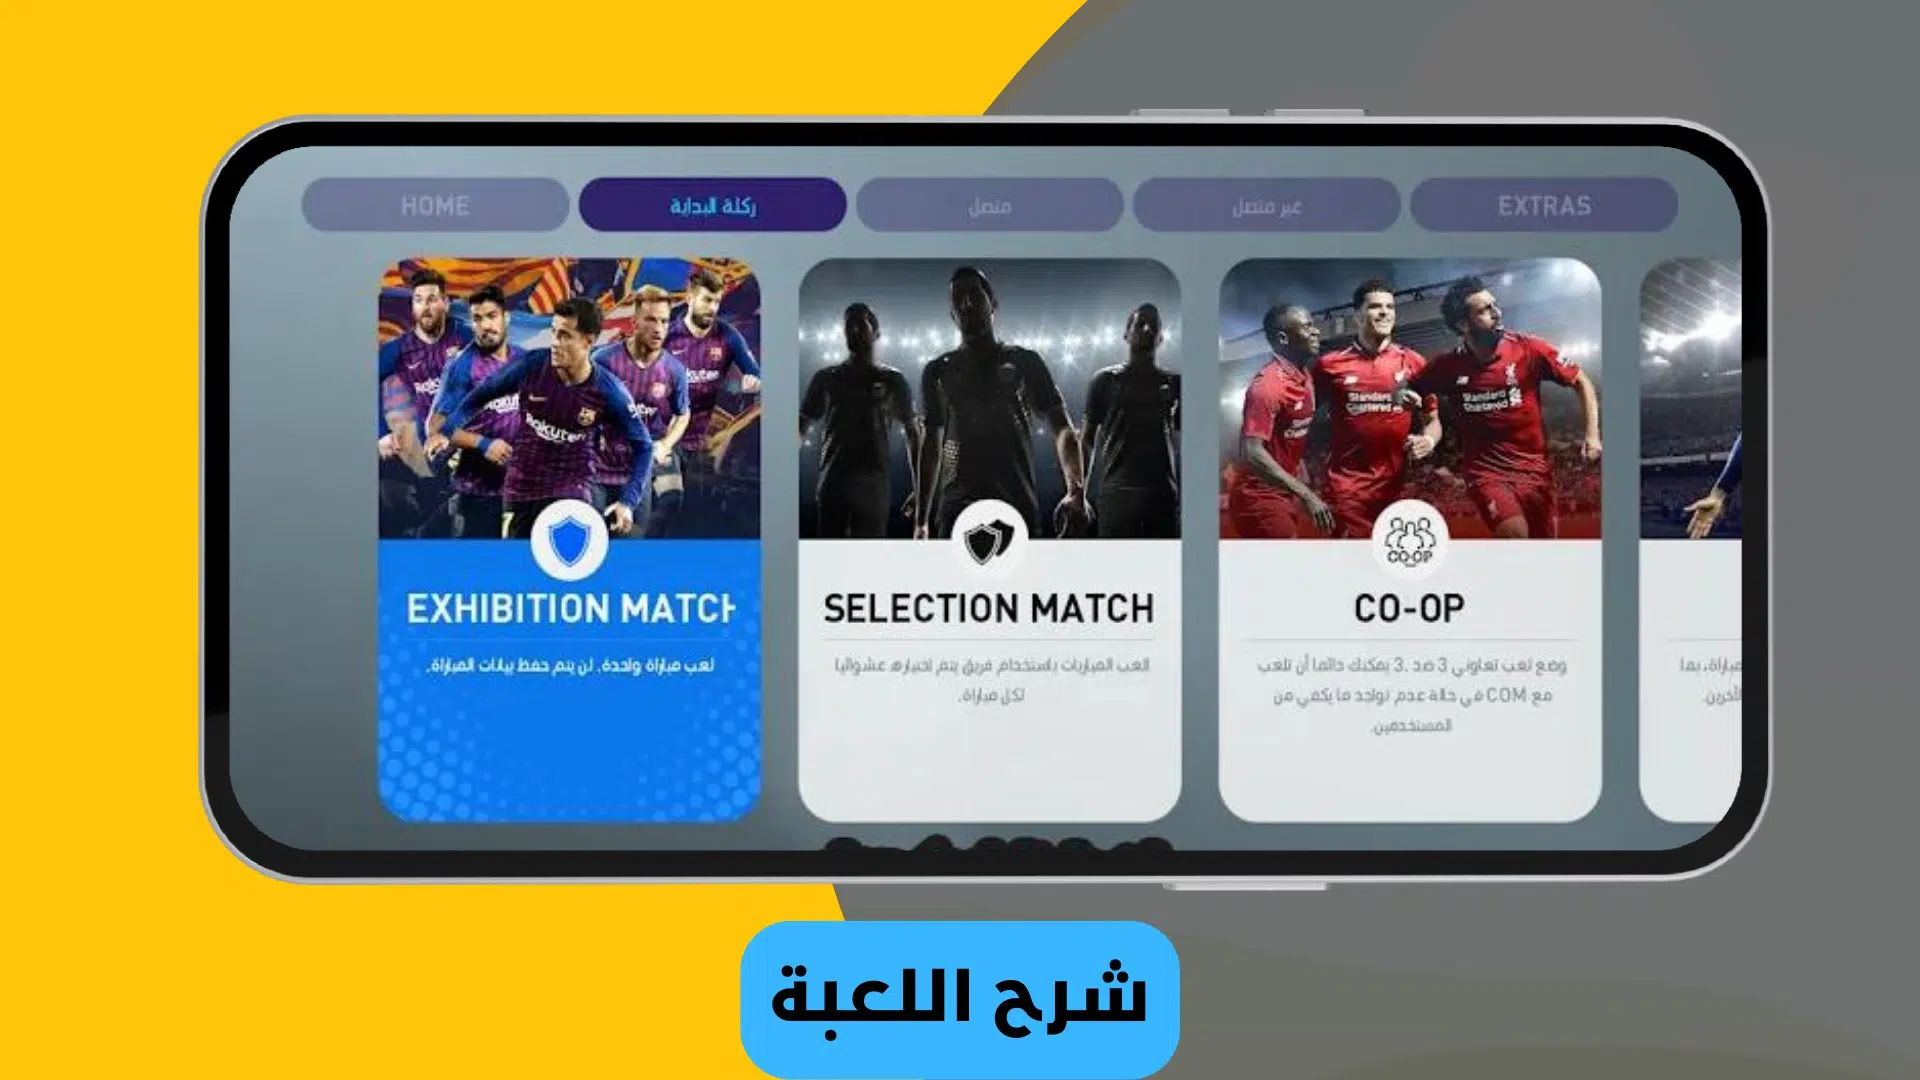 تحميل لعبة بيس 2019 للموبايل تعليق عربي بدون نت من ميديا فاير